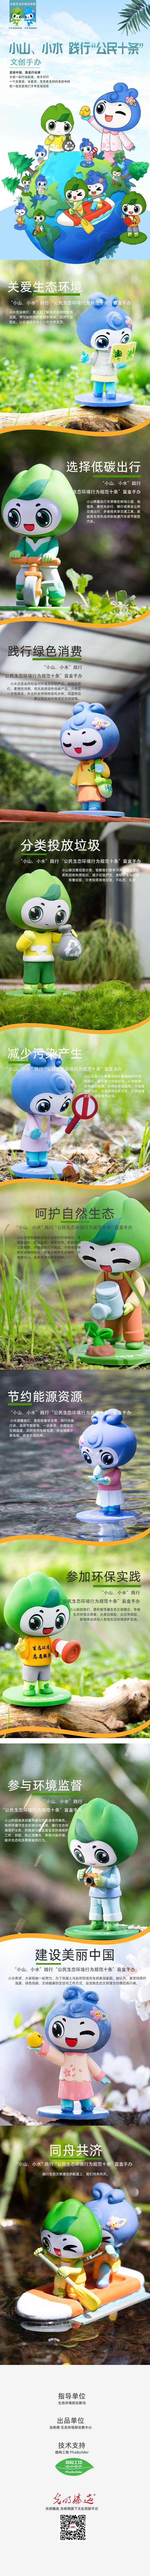 生态环保吉祥物“小山小水”系列文创手办发布